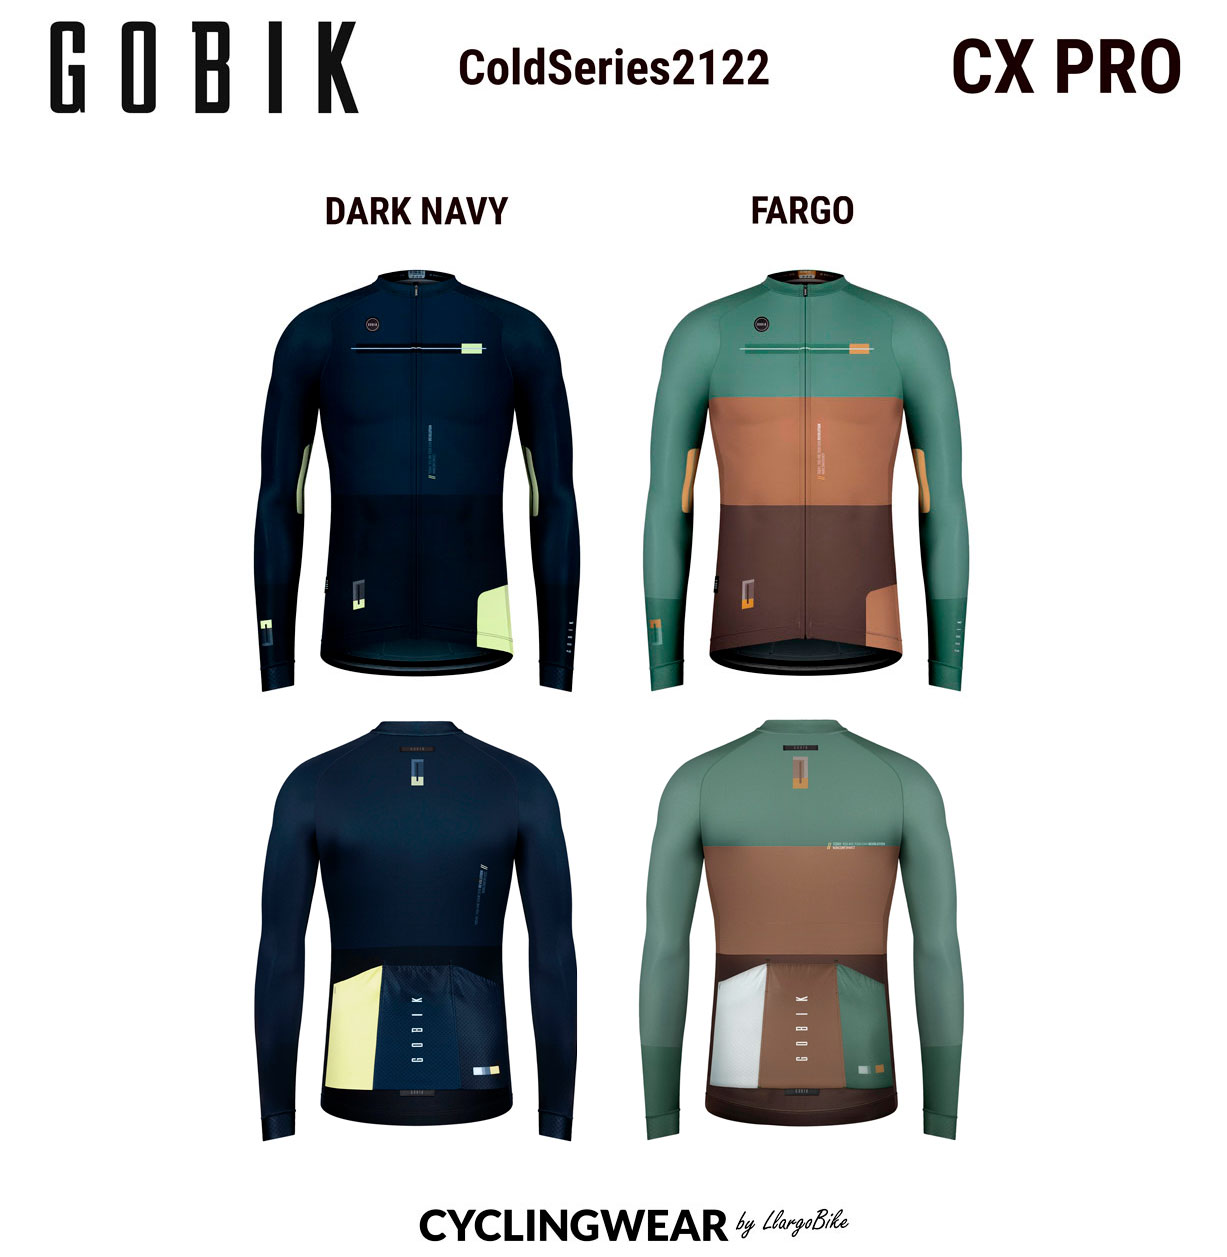 gobik-coldseries2122-cx-pro-cyclingwear-by-llargobike-v02